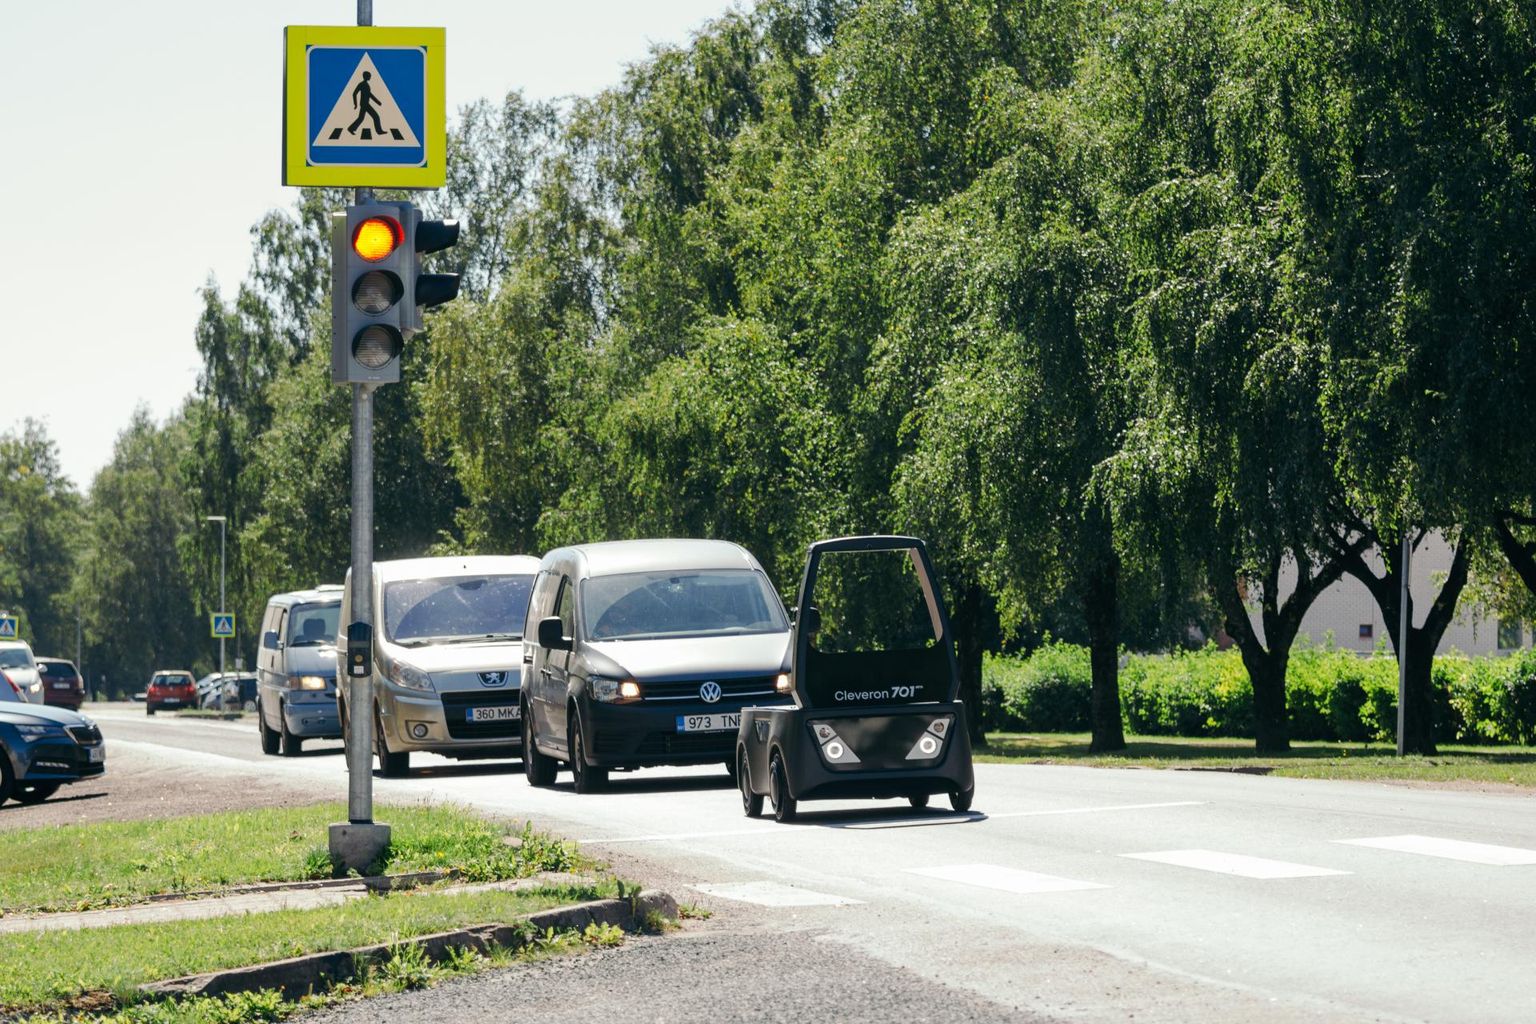 Cleveroni poolisesõitev auto on juba mitu aastat Viljandi tänavatel liikunud.